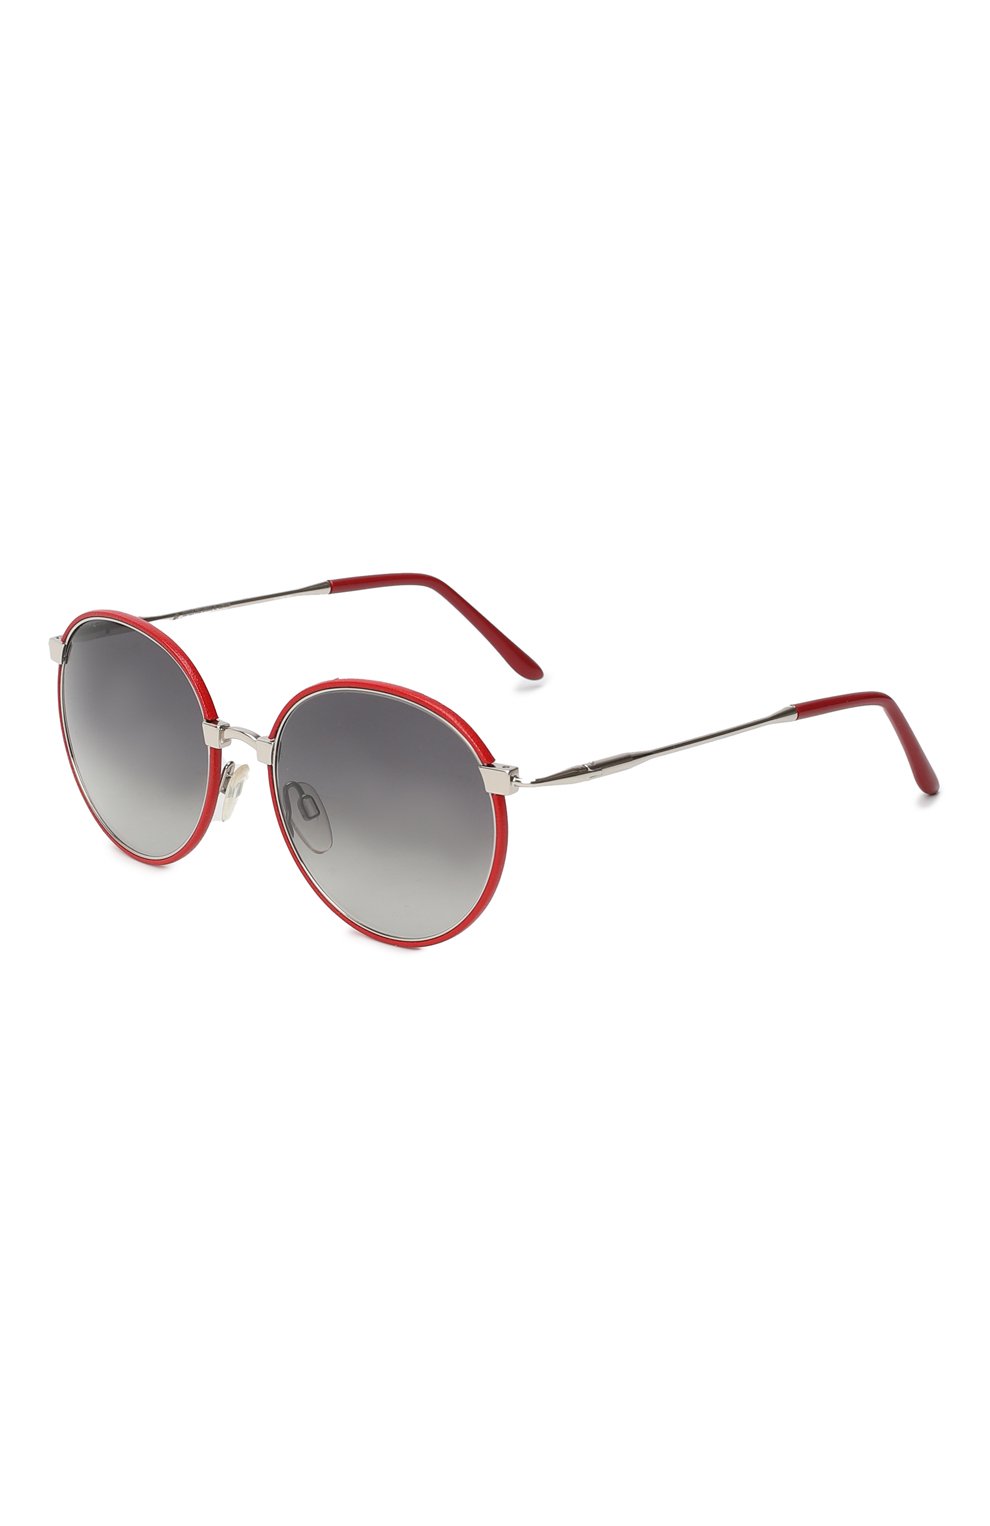 Солнцезащитные очки | Cutler and Gross | Красный - 1